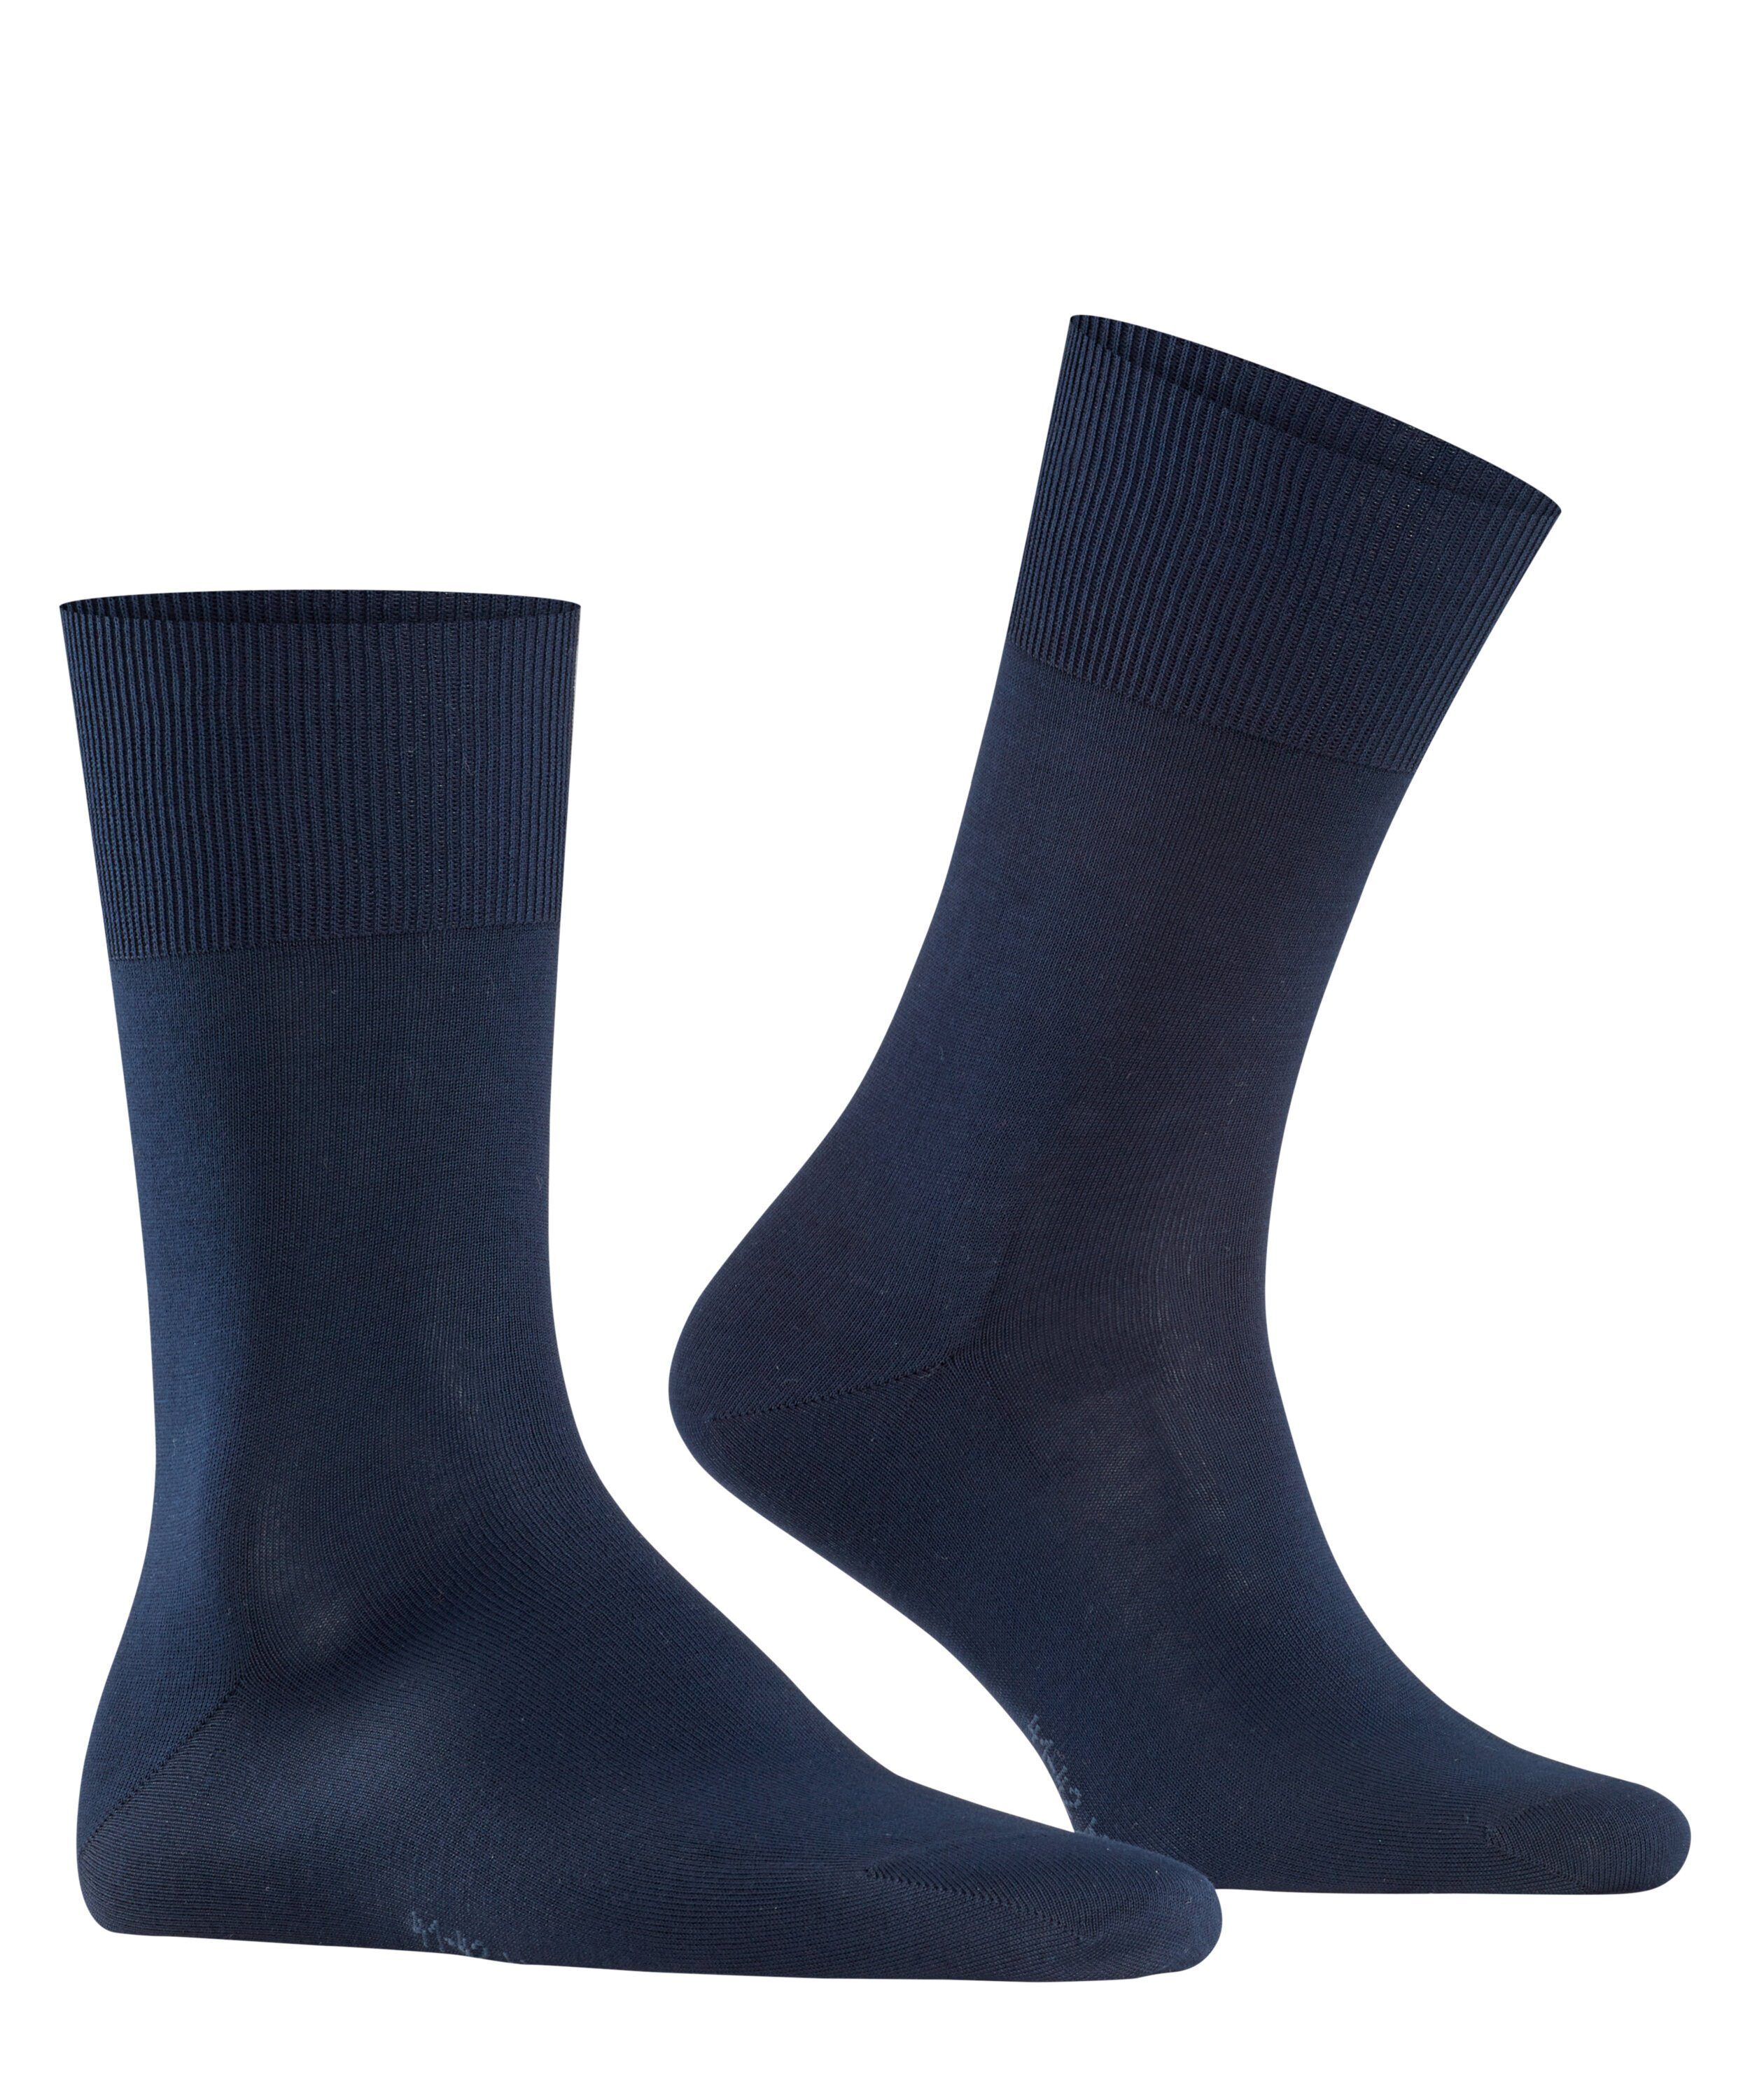 (6370) Firenze Socken FALKE navy dark (1-Paar)